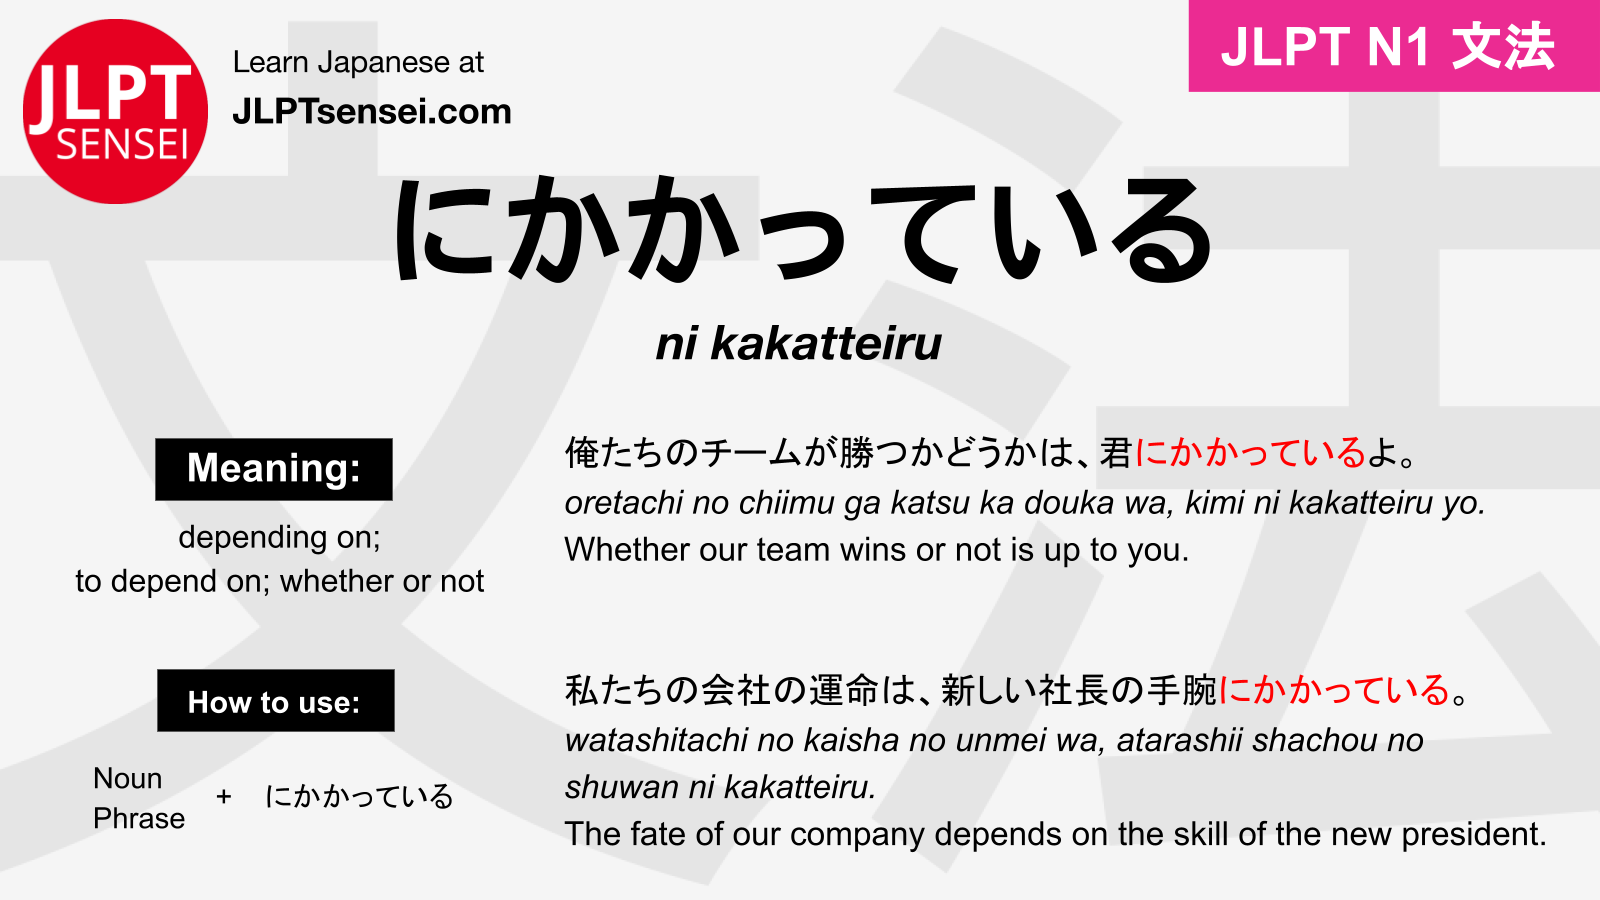 JLPT N1 Grammar: にかかっている (ni kakatteiru) Meaning – JLPTsensei.com